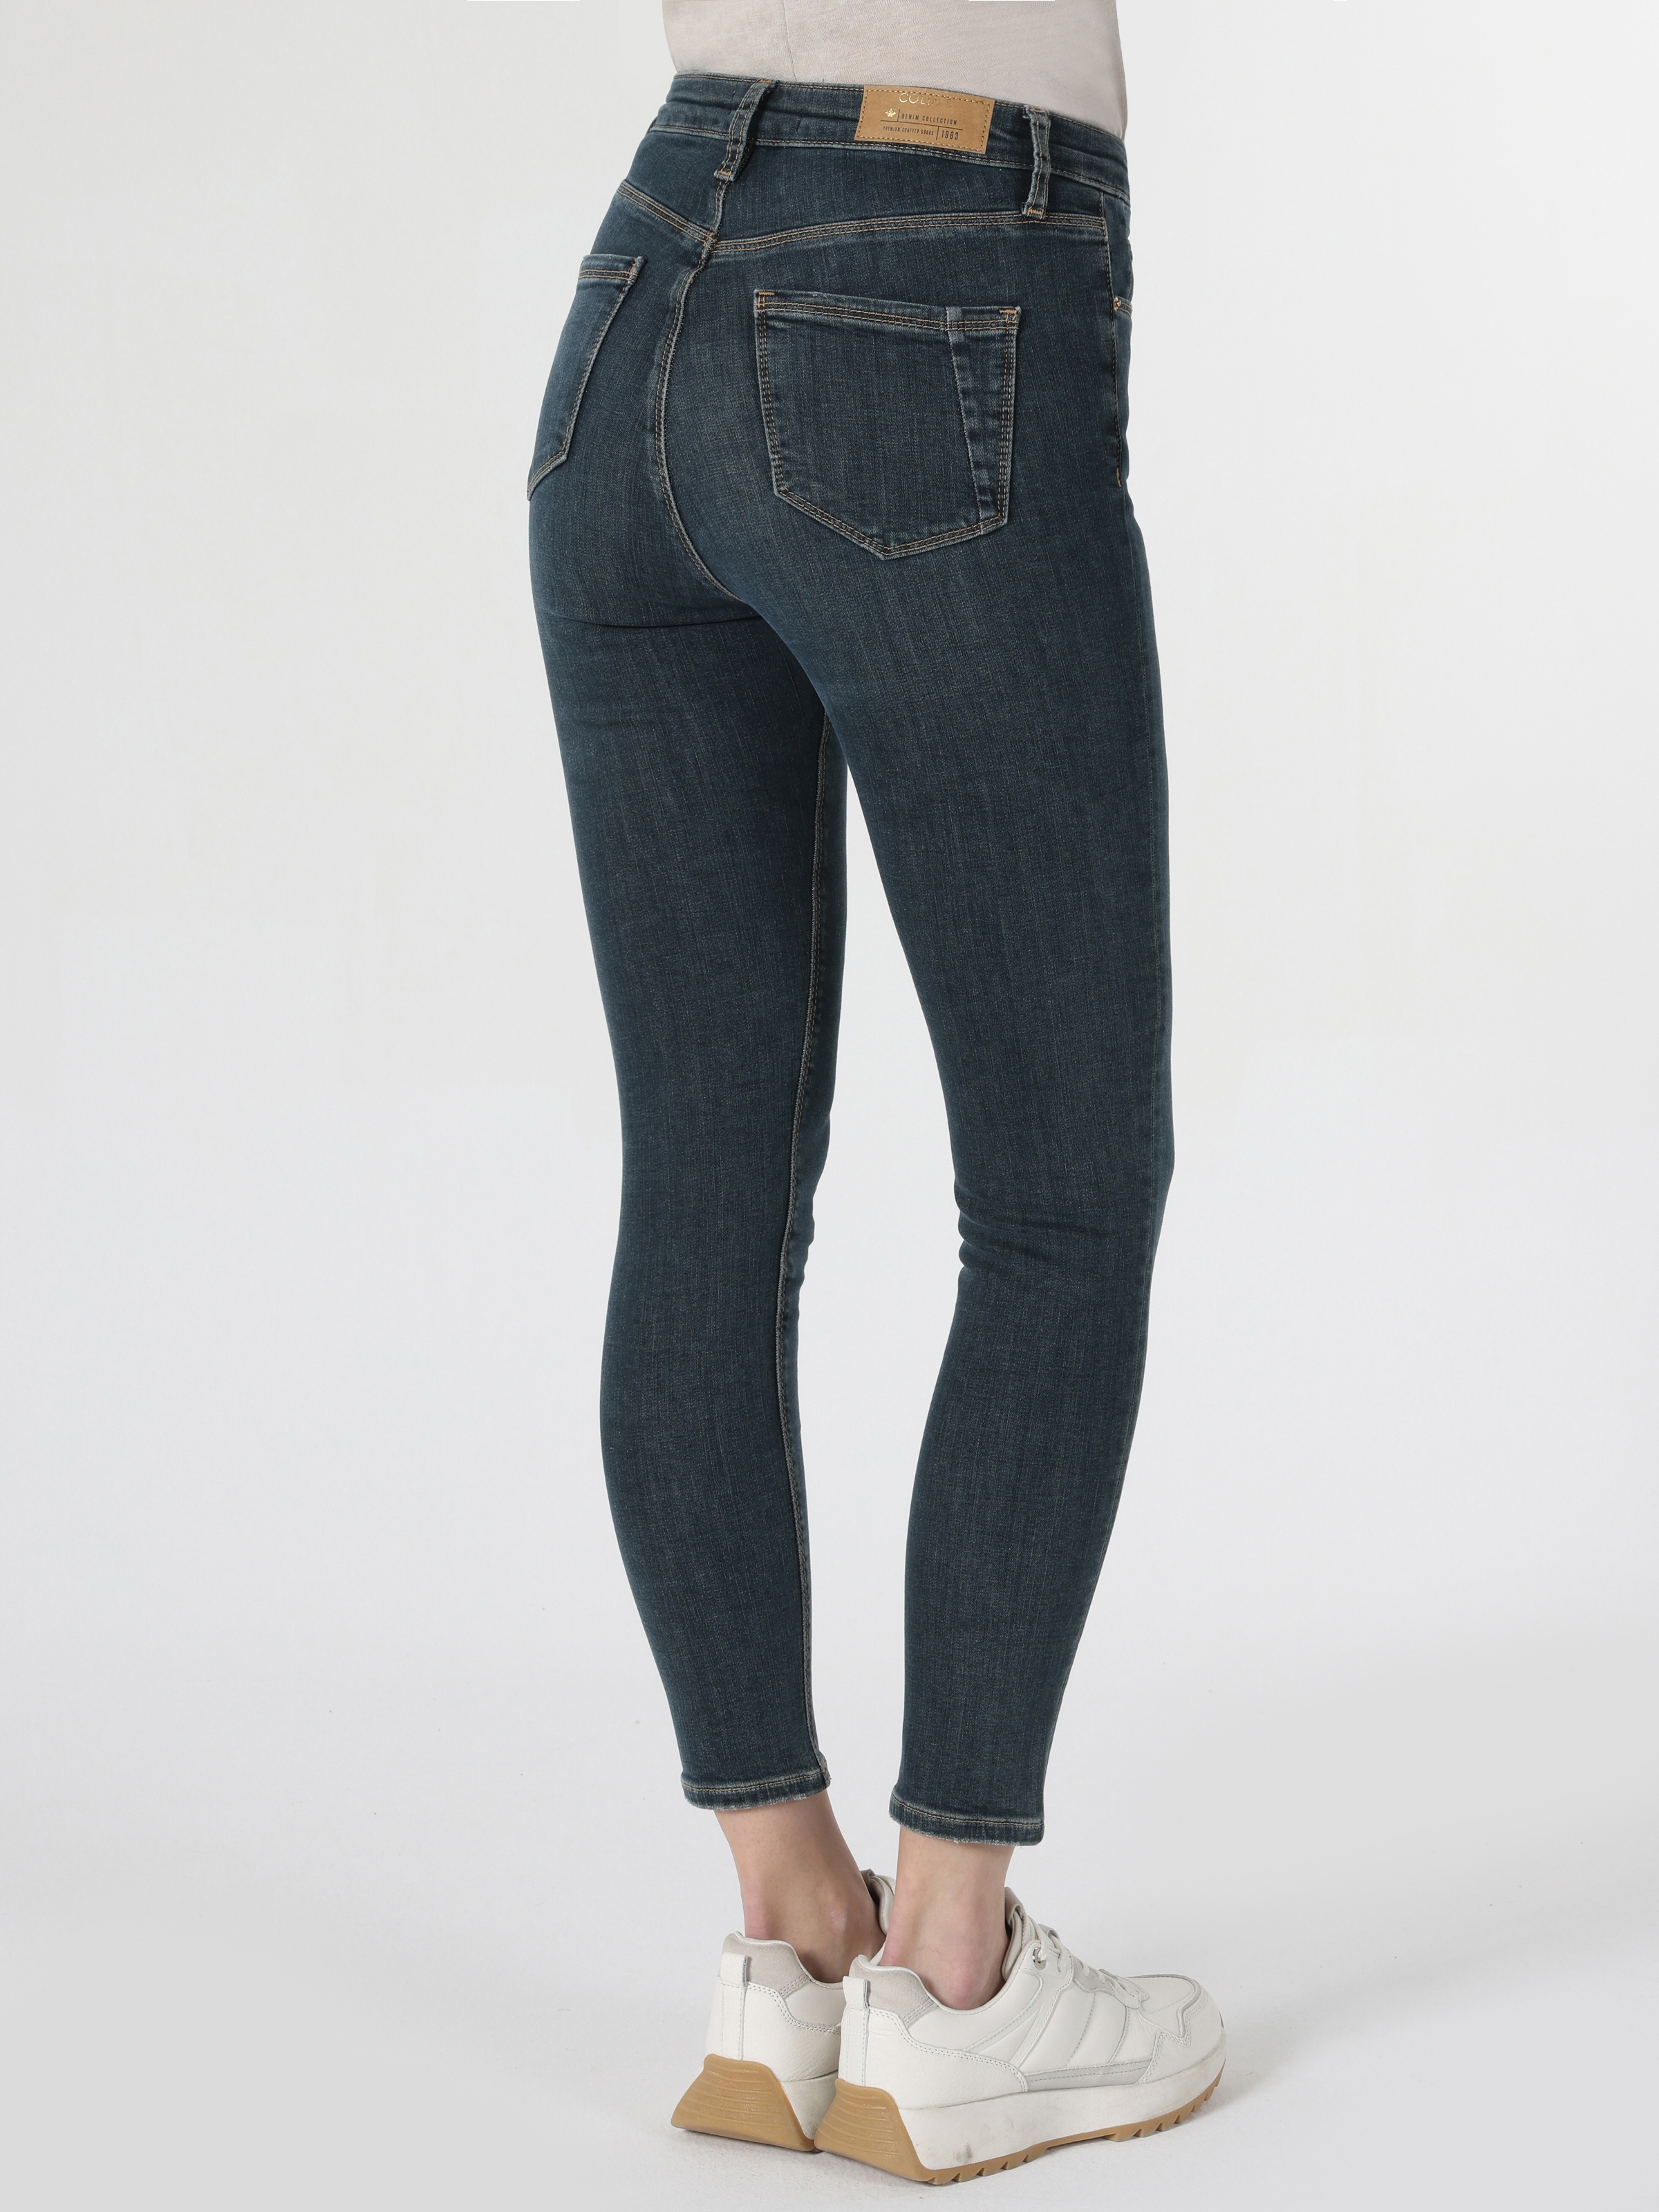 Afficher les détails de Pantalon 760 Diana Super Slim Fit Taille Haute Jambe Skinny Bleu Pour Femme